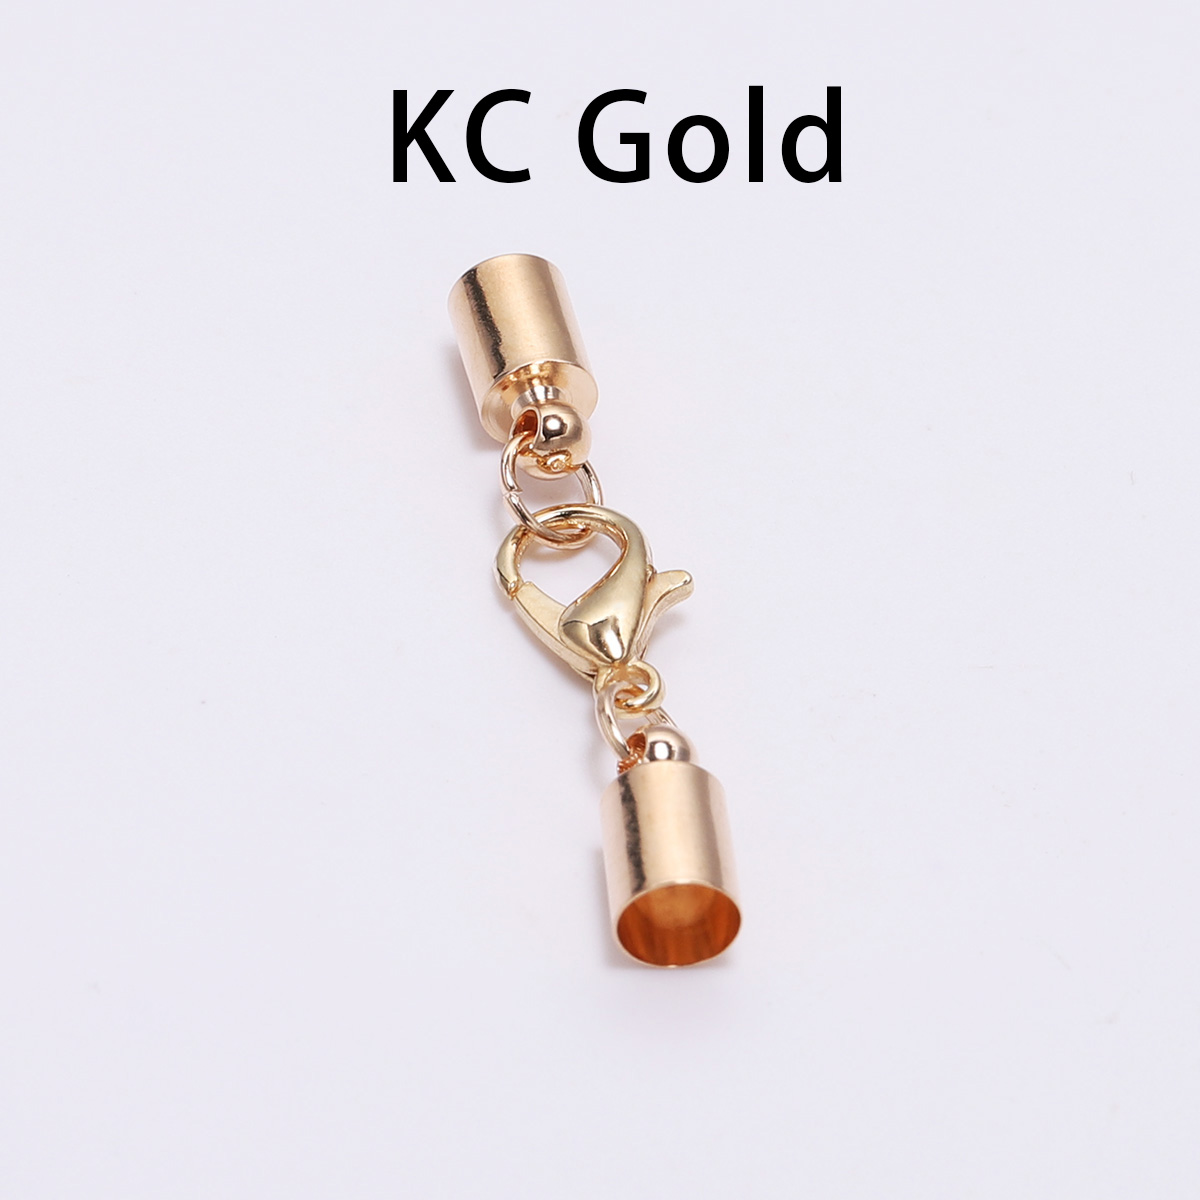 KC gold 10mm